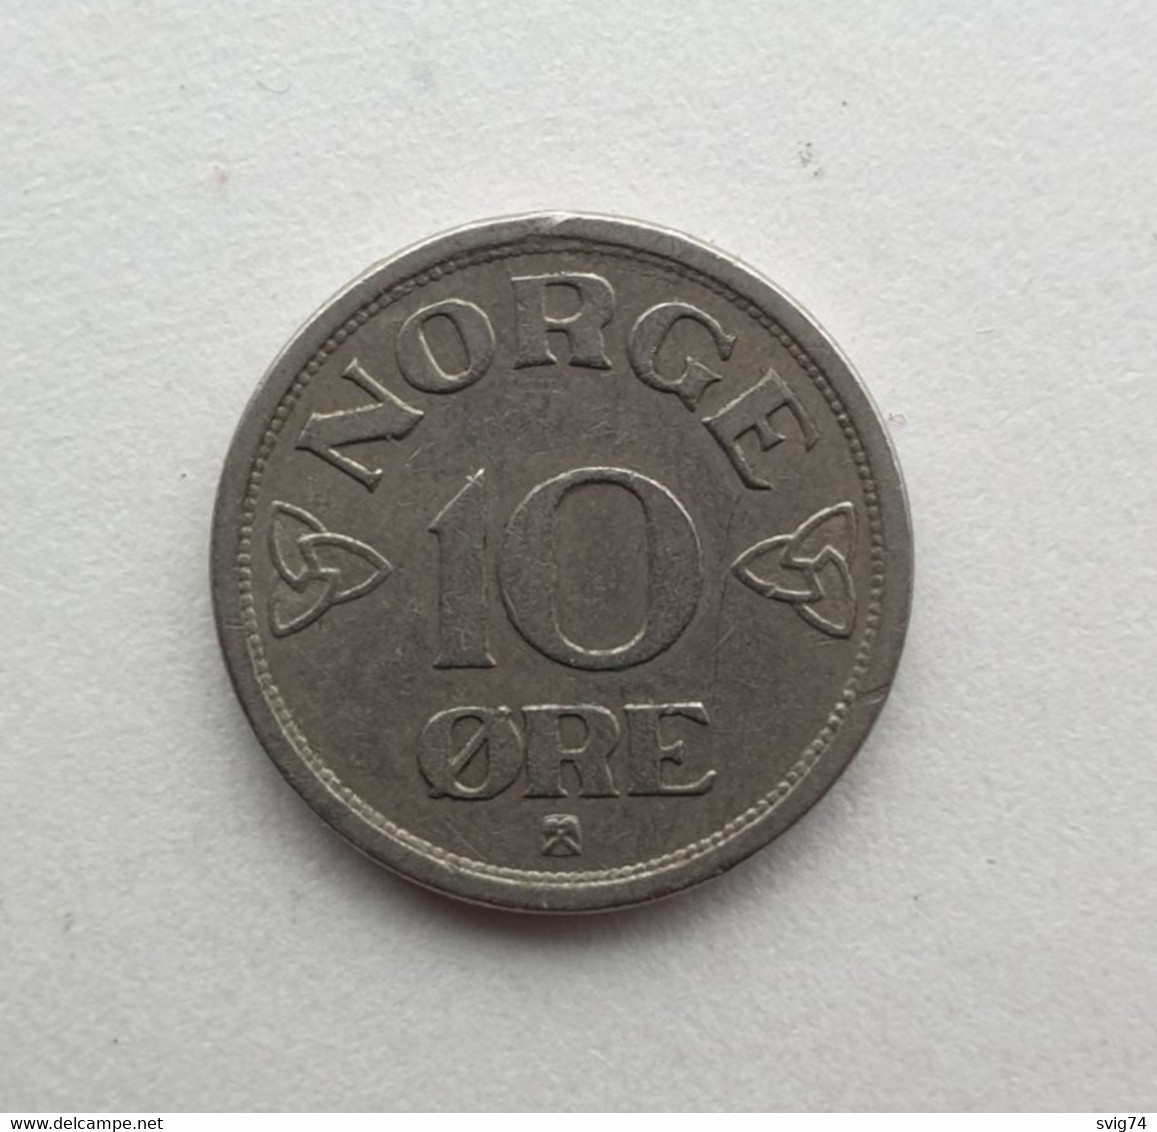 Norway - 10 Øre - Haakon VII - 1955 - Norway